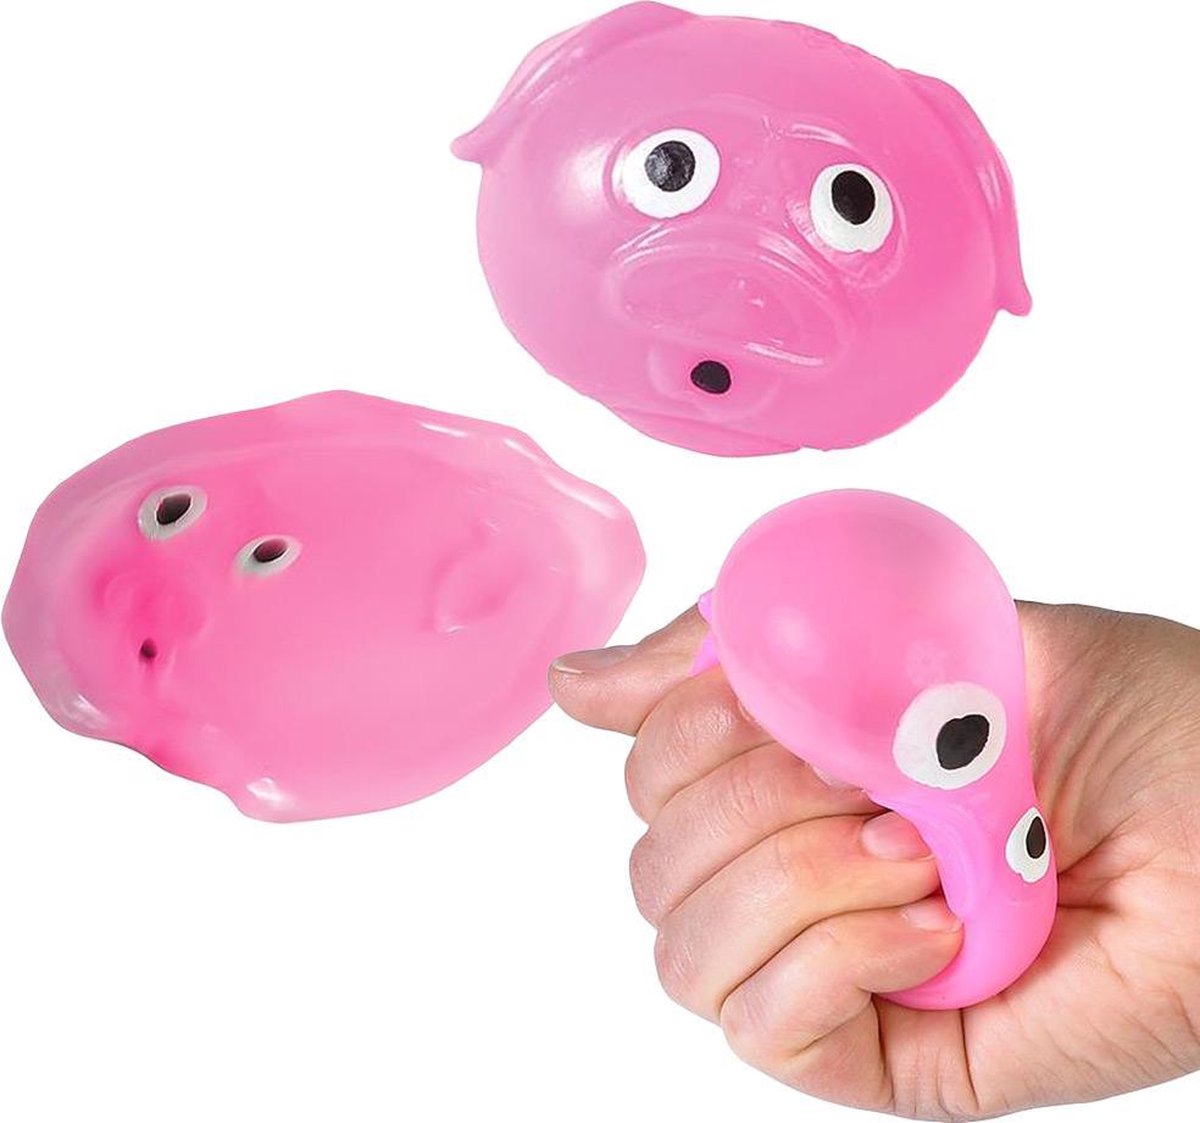 Sticky Balls Varken 1 exemplaar Splat Ball fidget toys